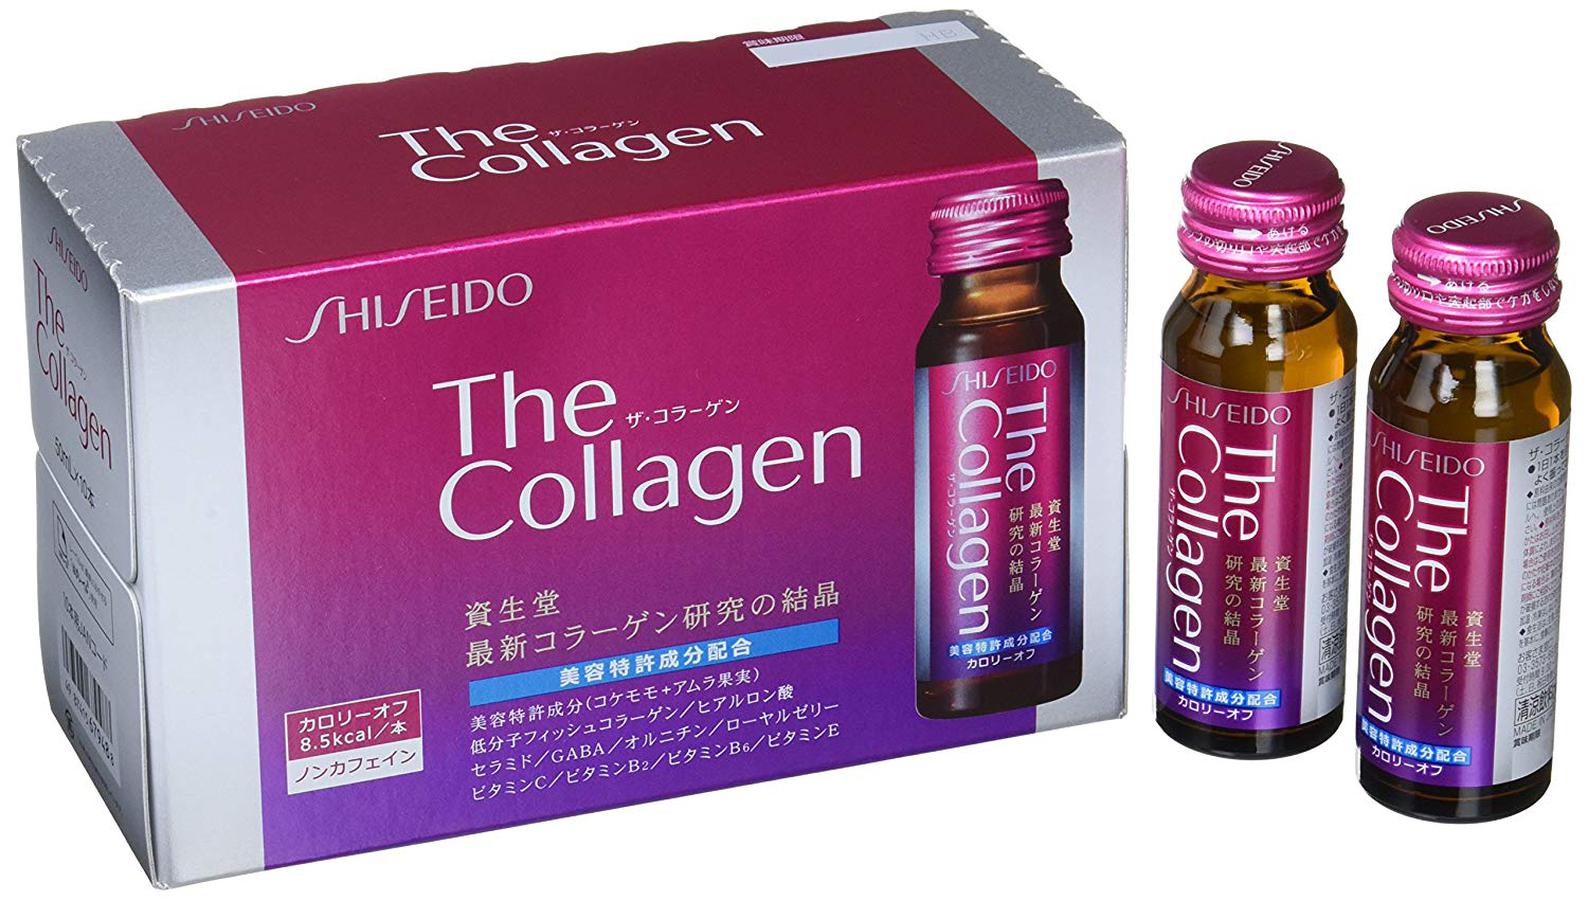 The Collagen Shiseido Dạng Nước Của Nhật Giá Tốt